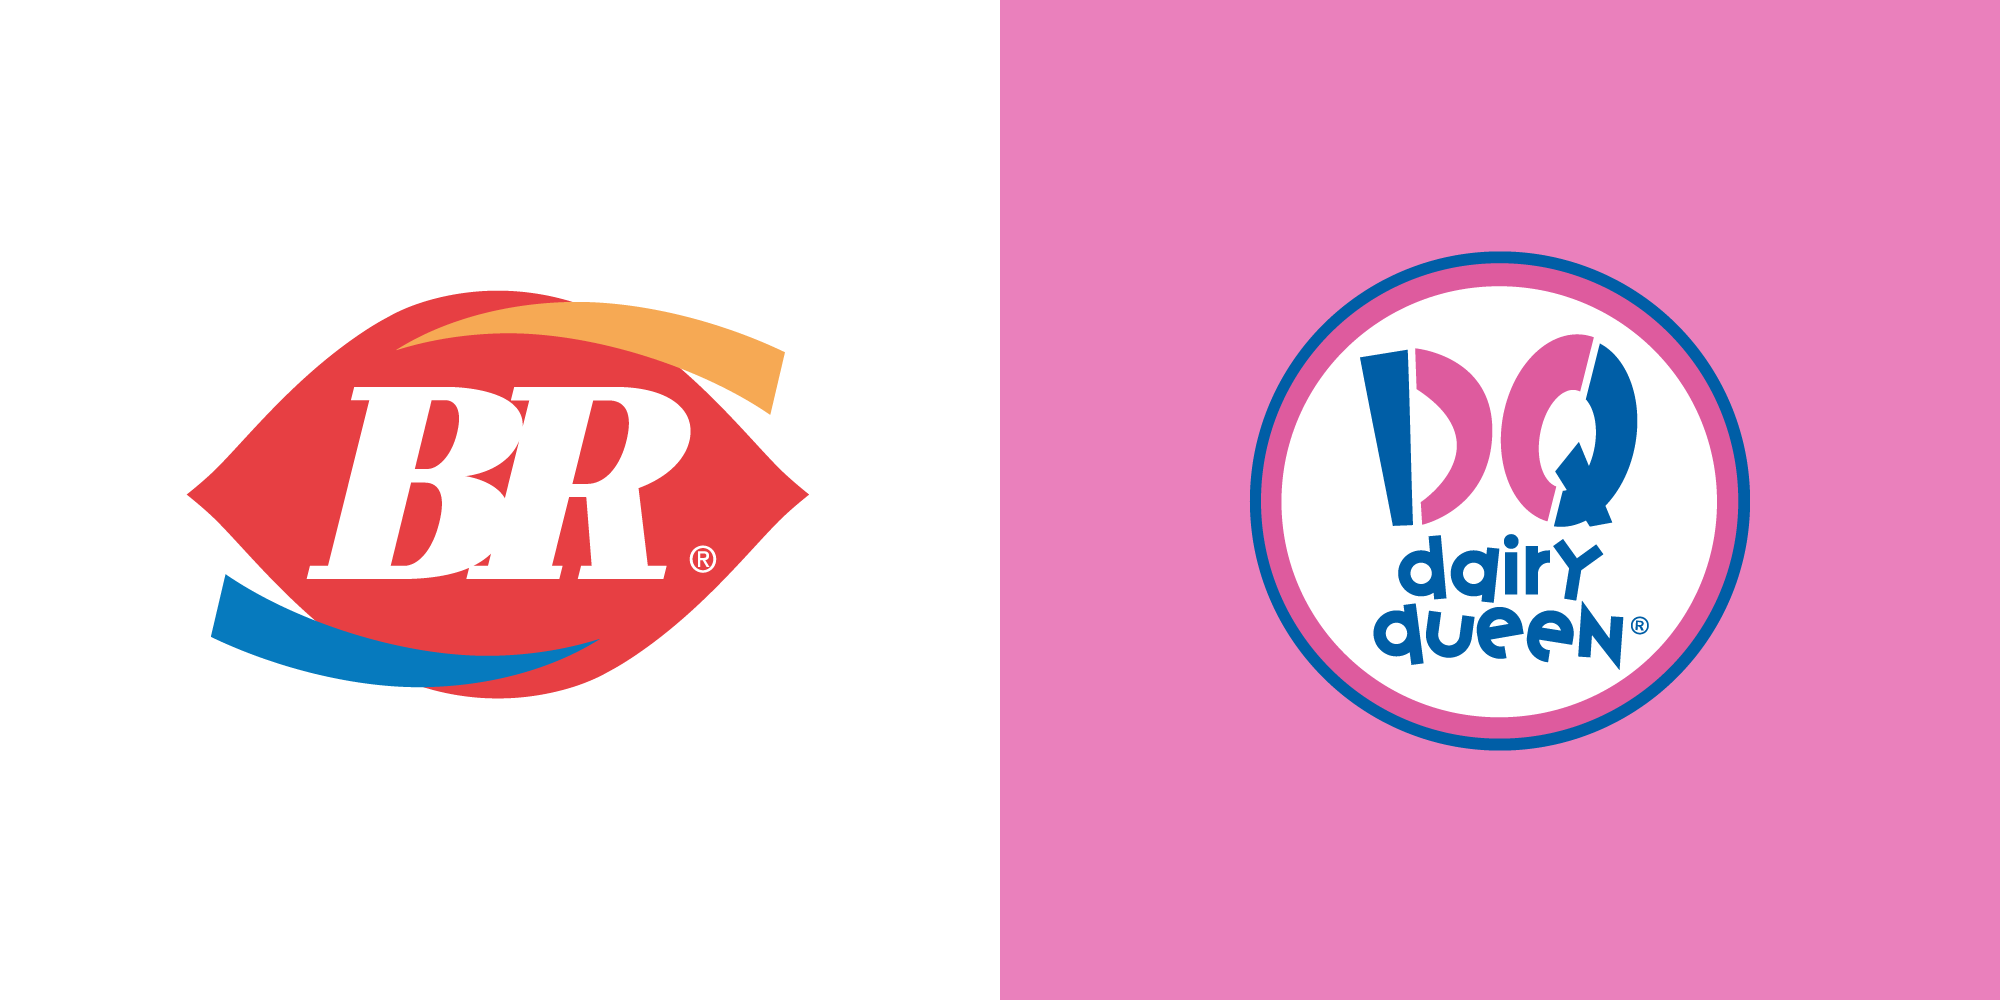 Dairy queen. Dairy Queen логотип. Лого брендов. Баскин Роббинс лого. Смешение логотипов.